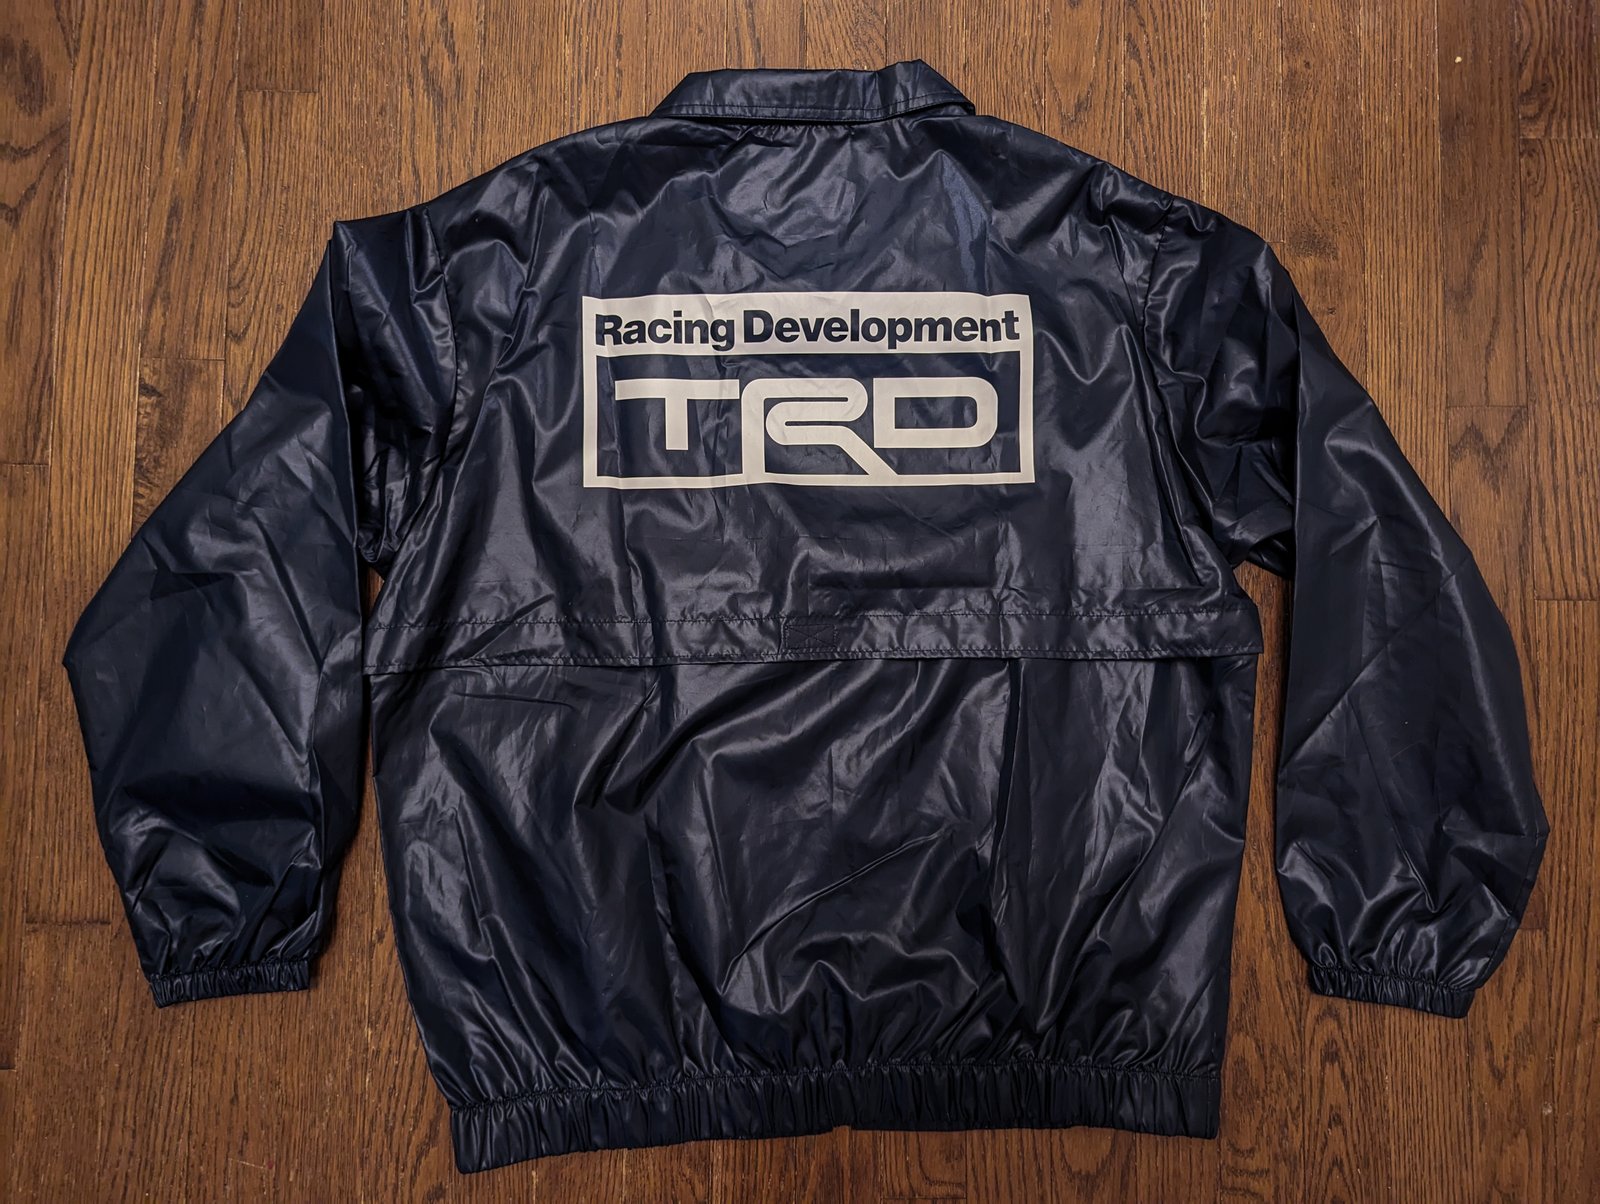 TRD Toyota Racing Development Japan Windbreaker Jacket - New Deadstock